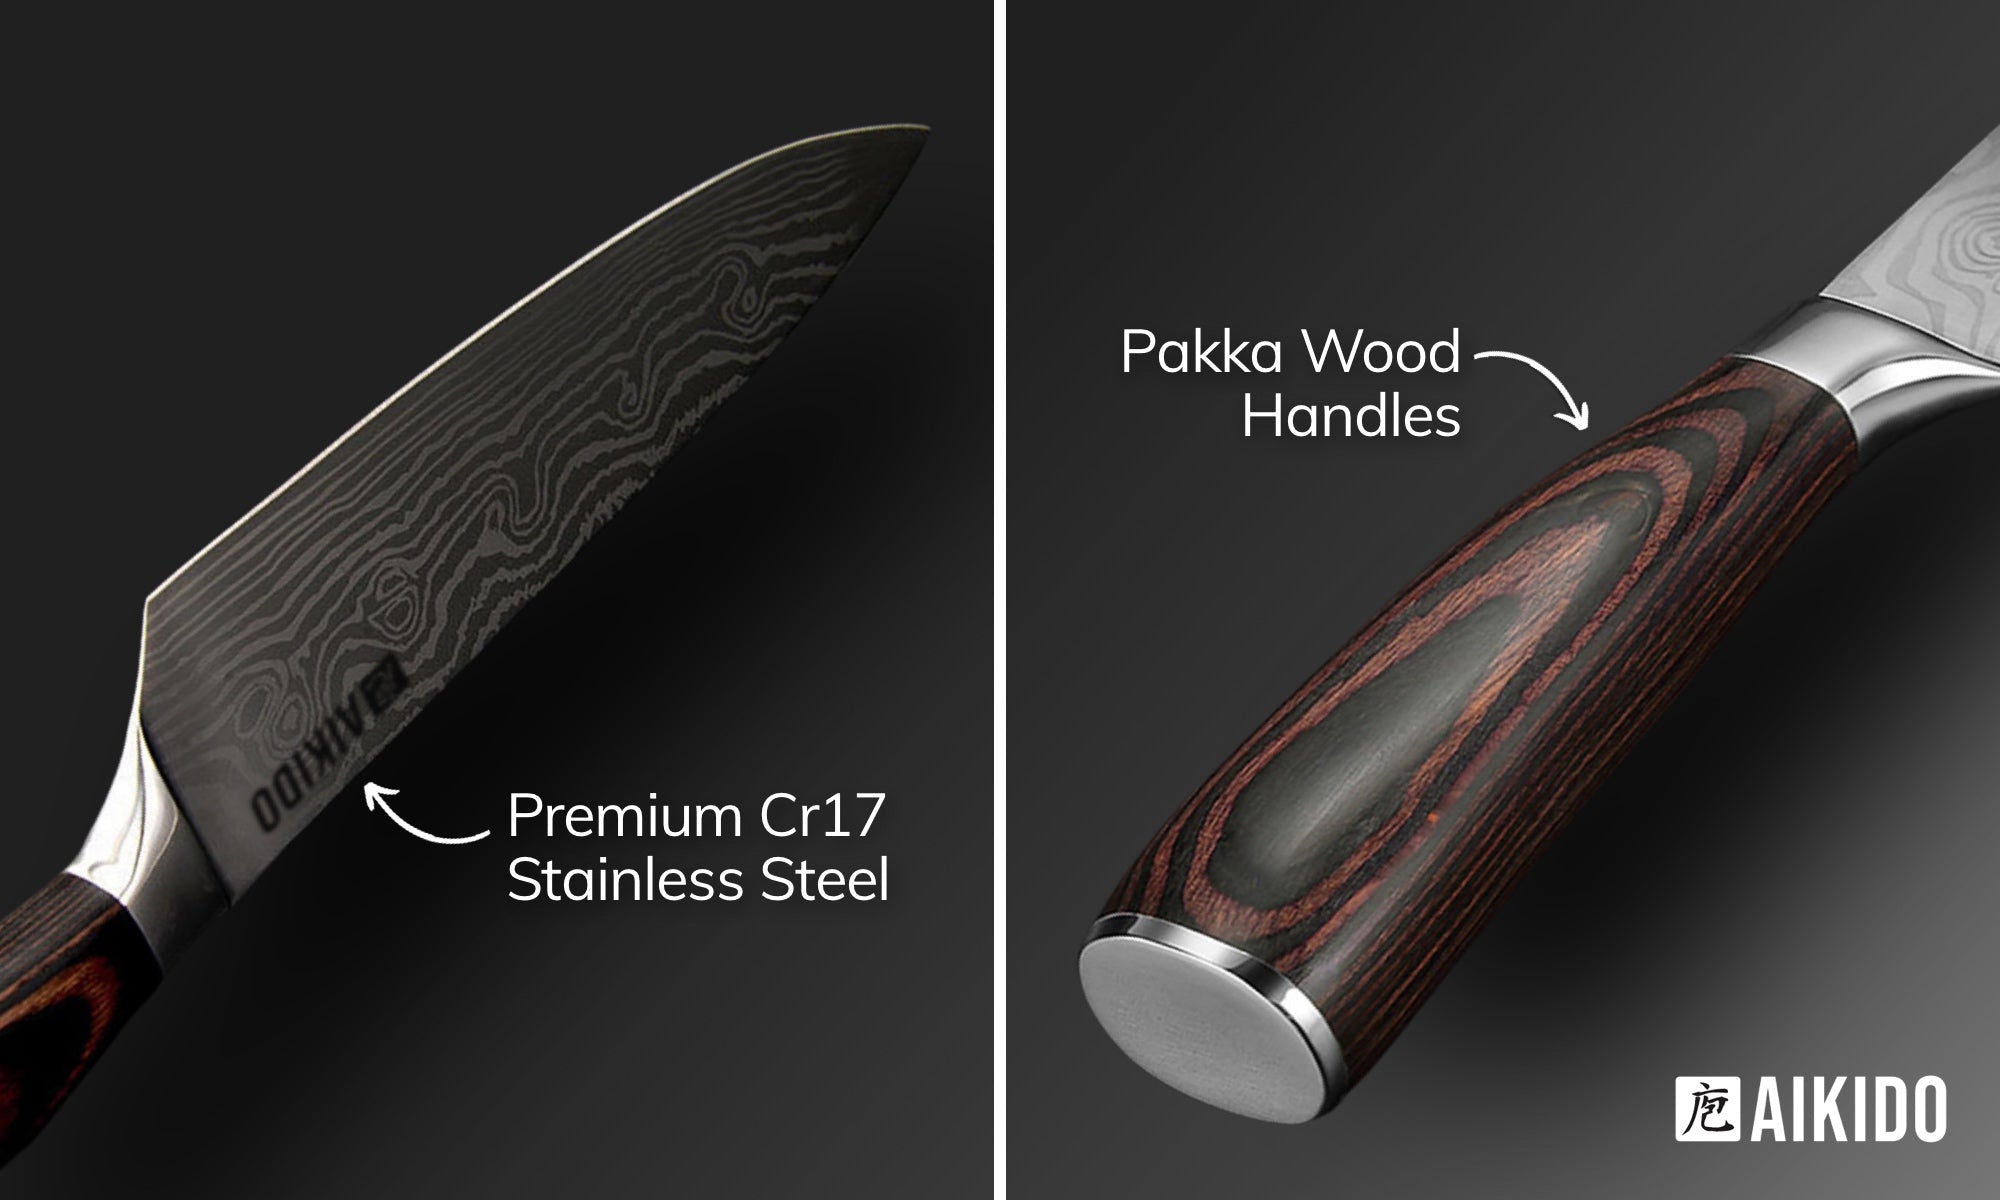 Signature 11-Piece Knife Set – Aikido Steel